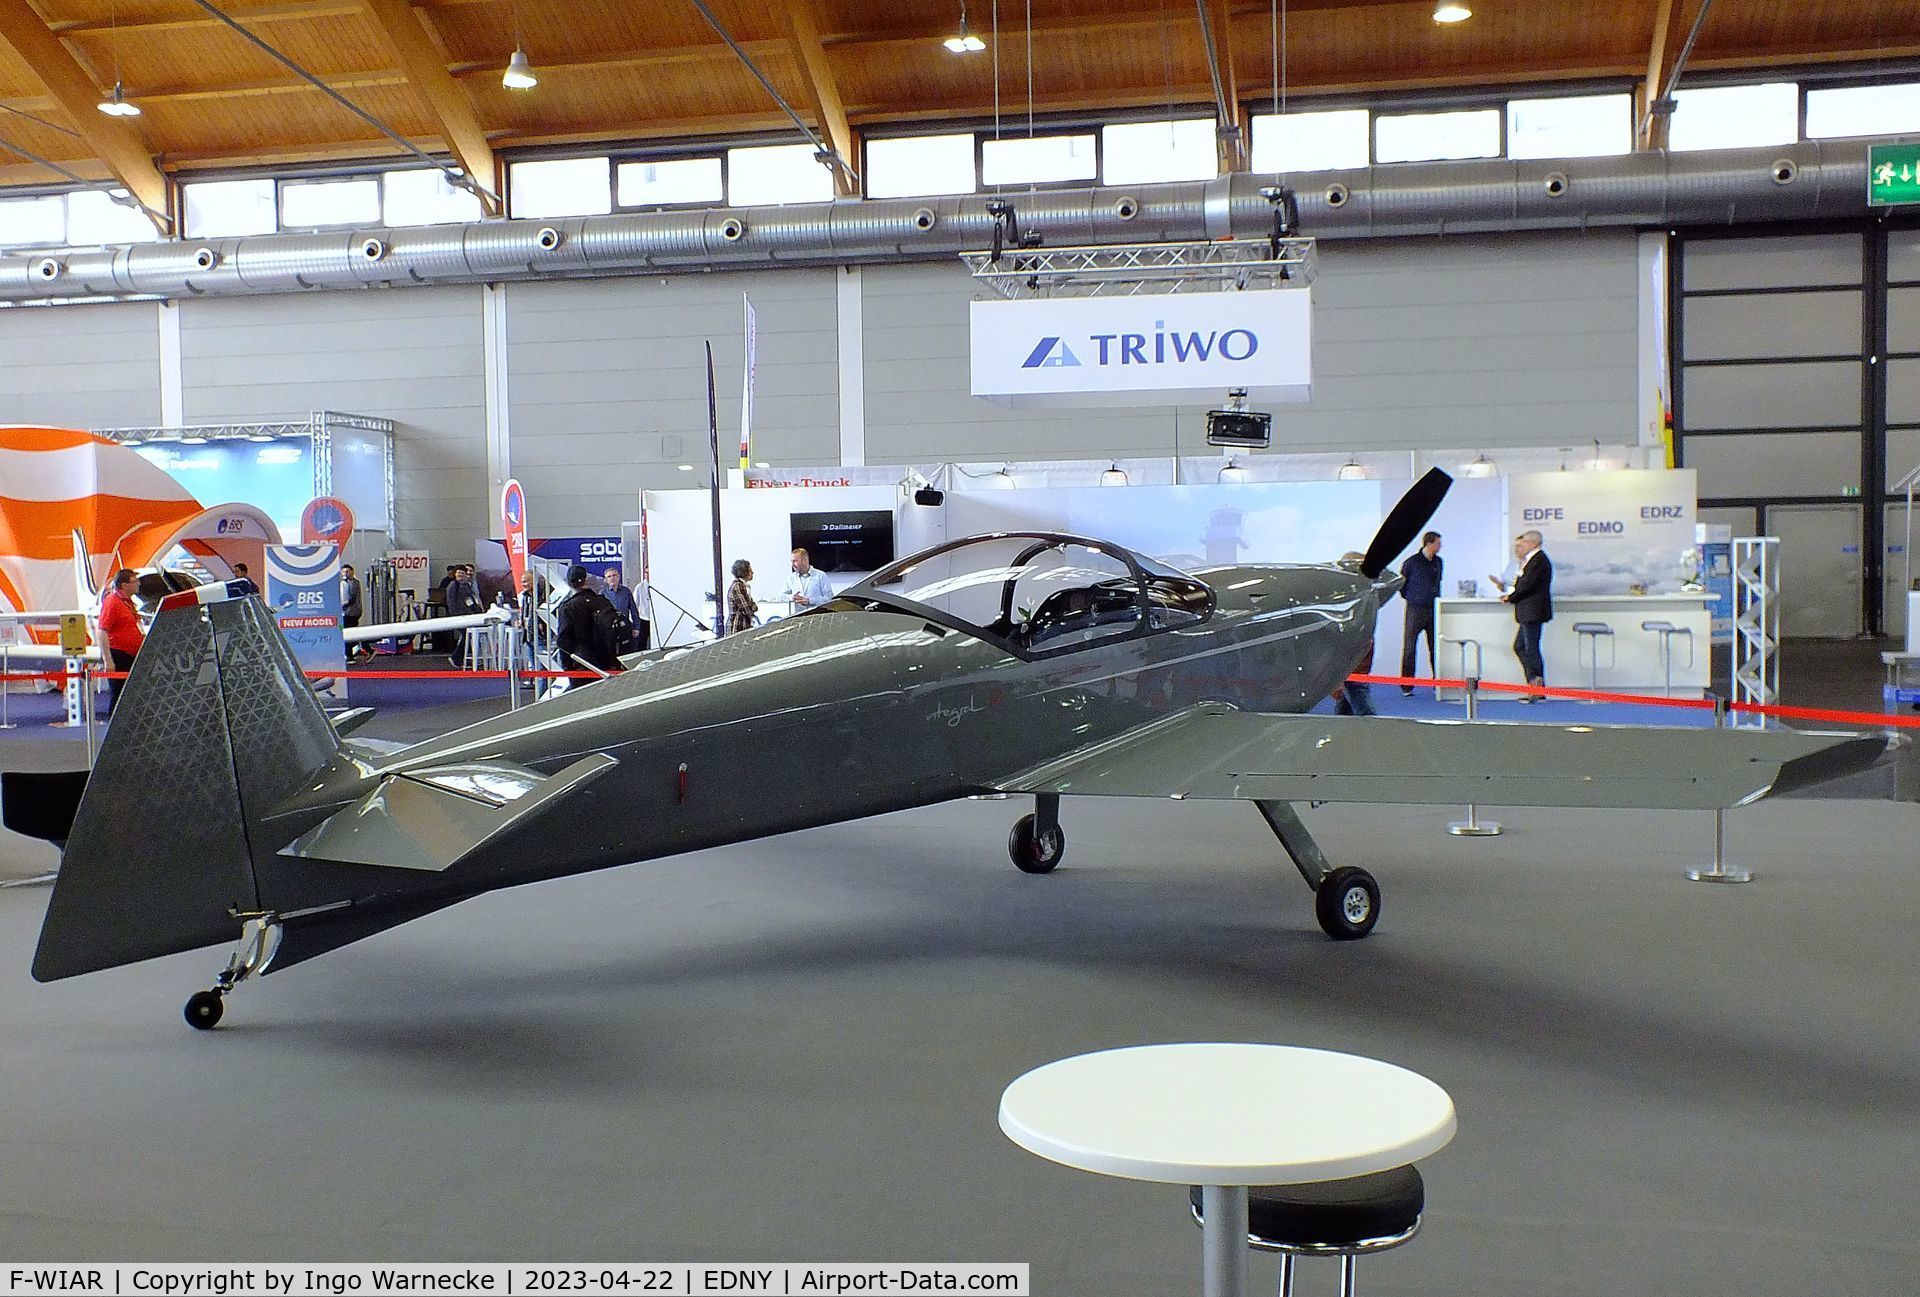 F-WIAR, 2023 Aura Aero Integral R C/N 02, Aura Aero Integral R at the AERO 2023, Friedrichshafen